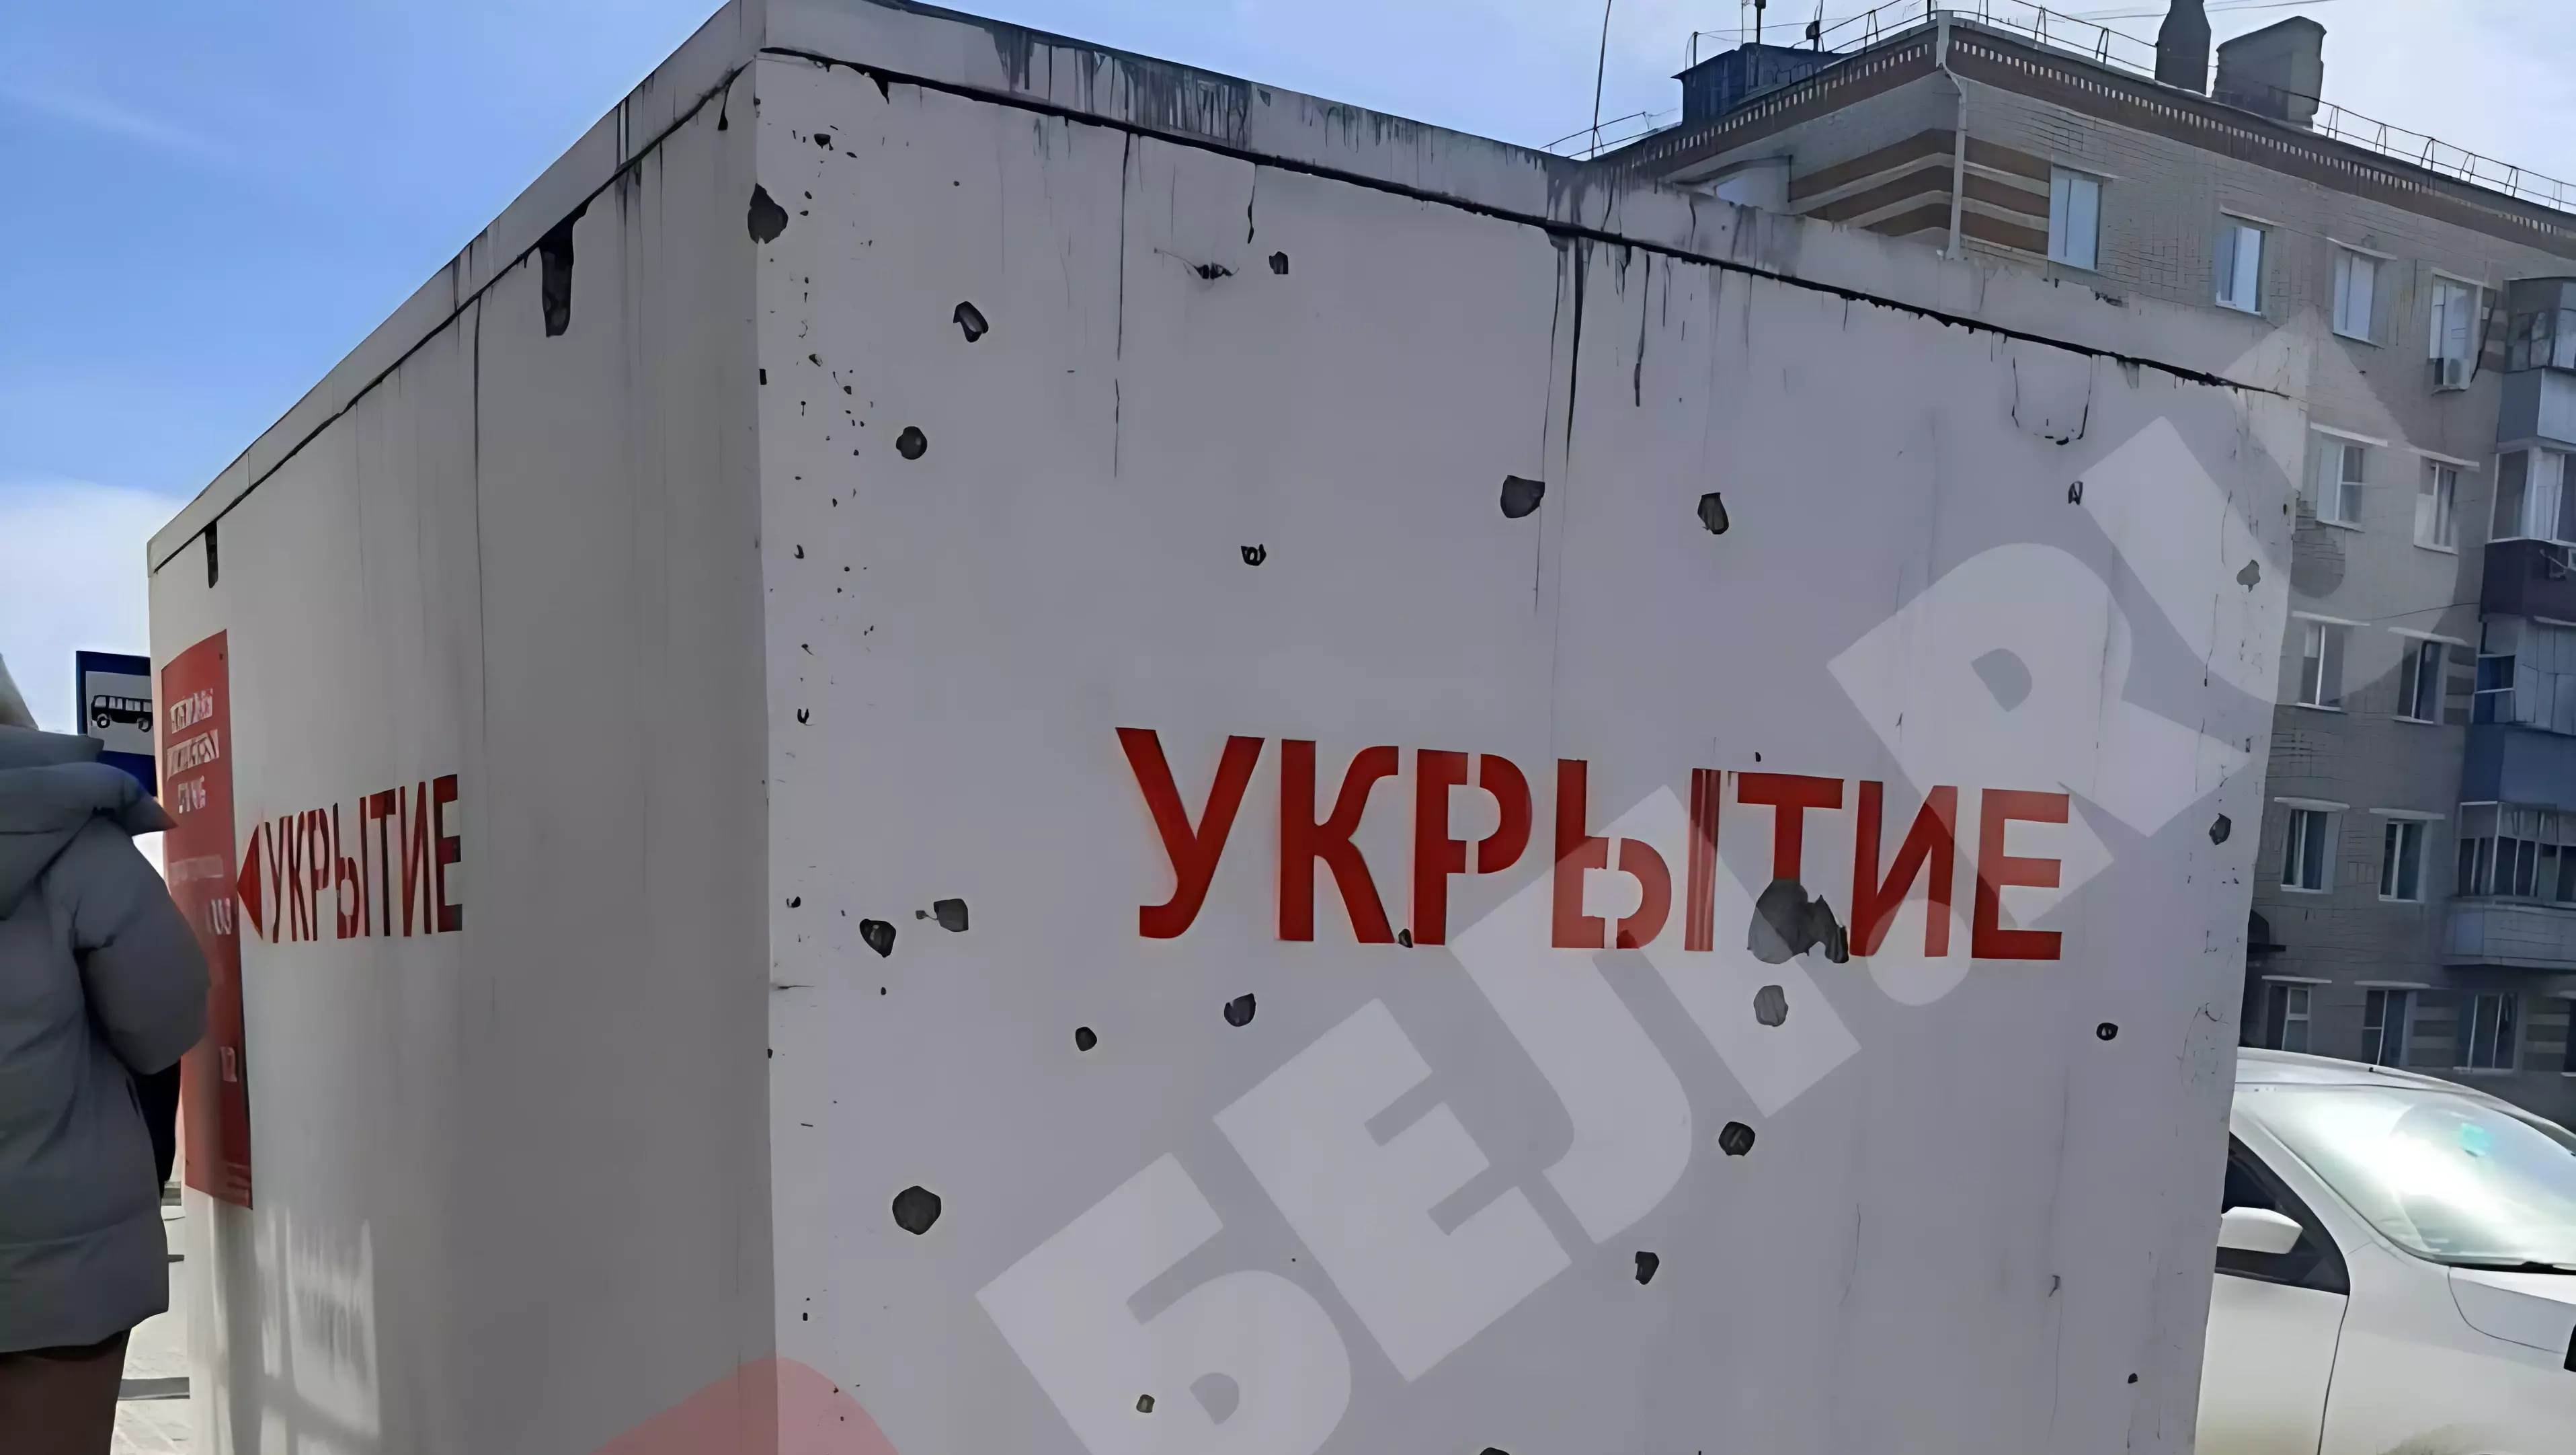 Гладков рассказал, как бетонное укрытие спасло жизни белгородцам во время обстрела